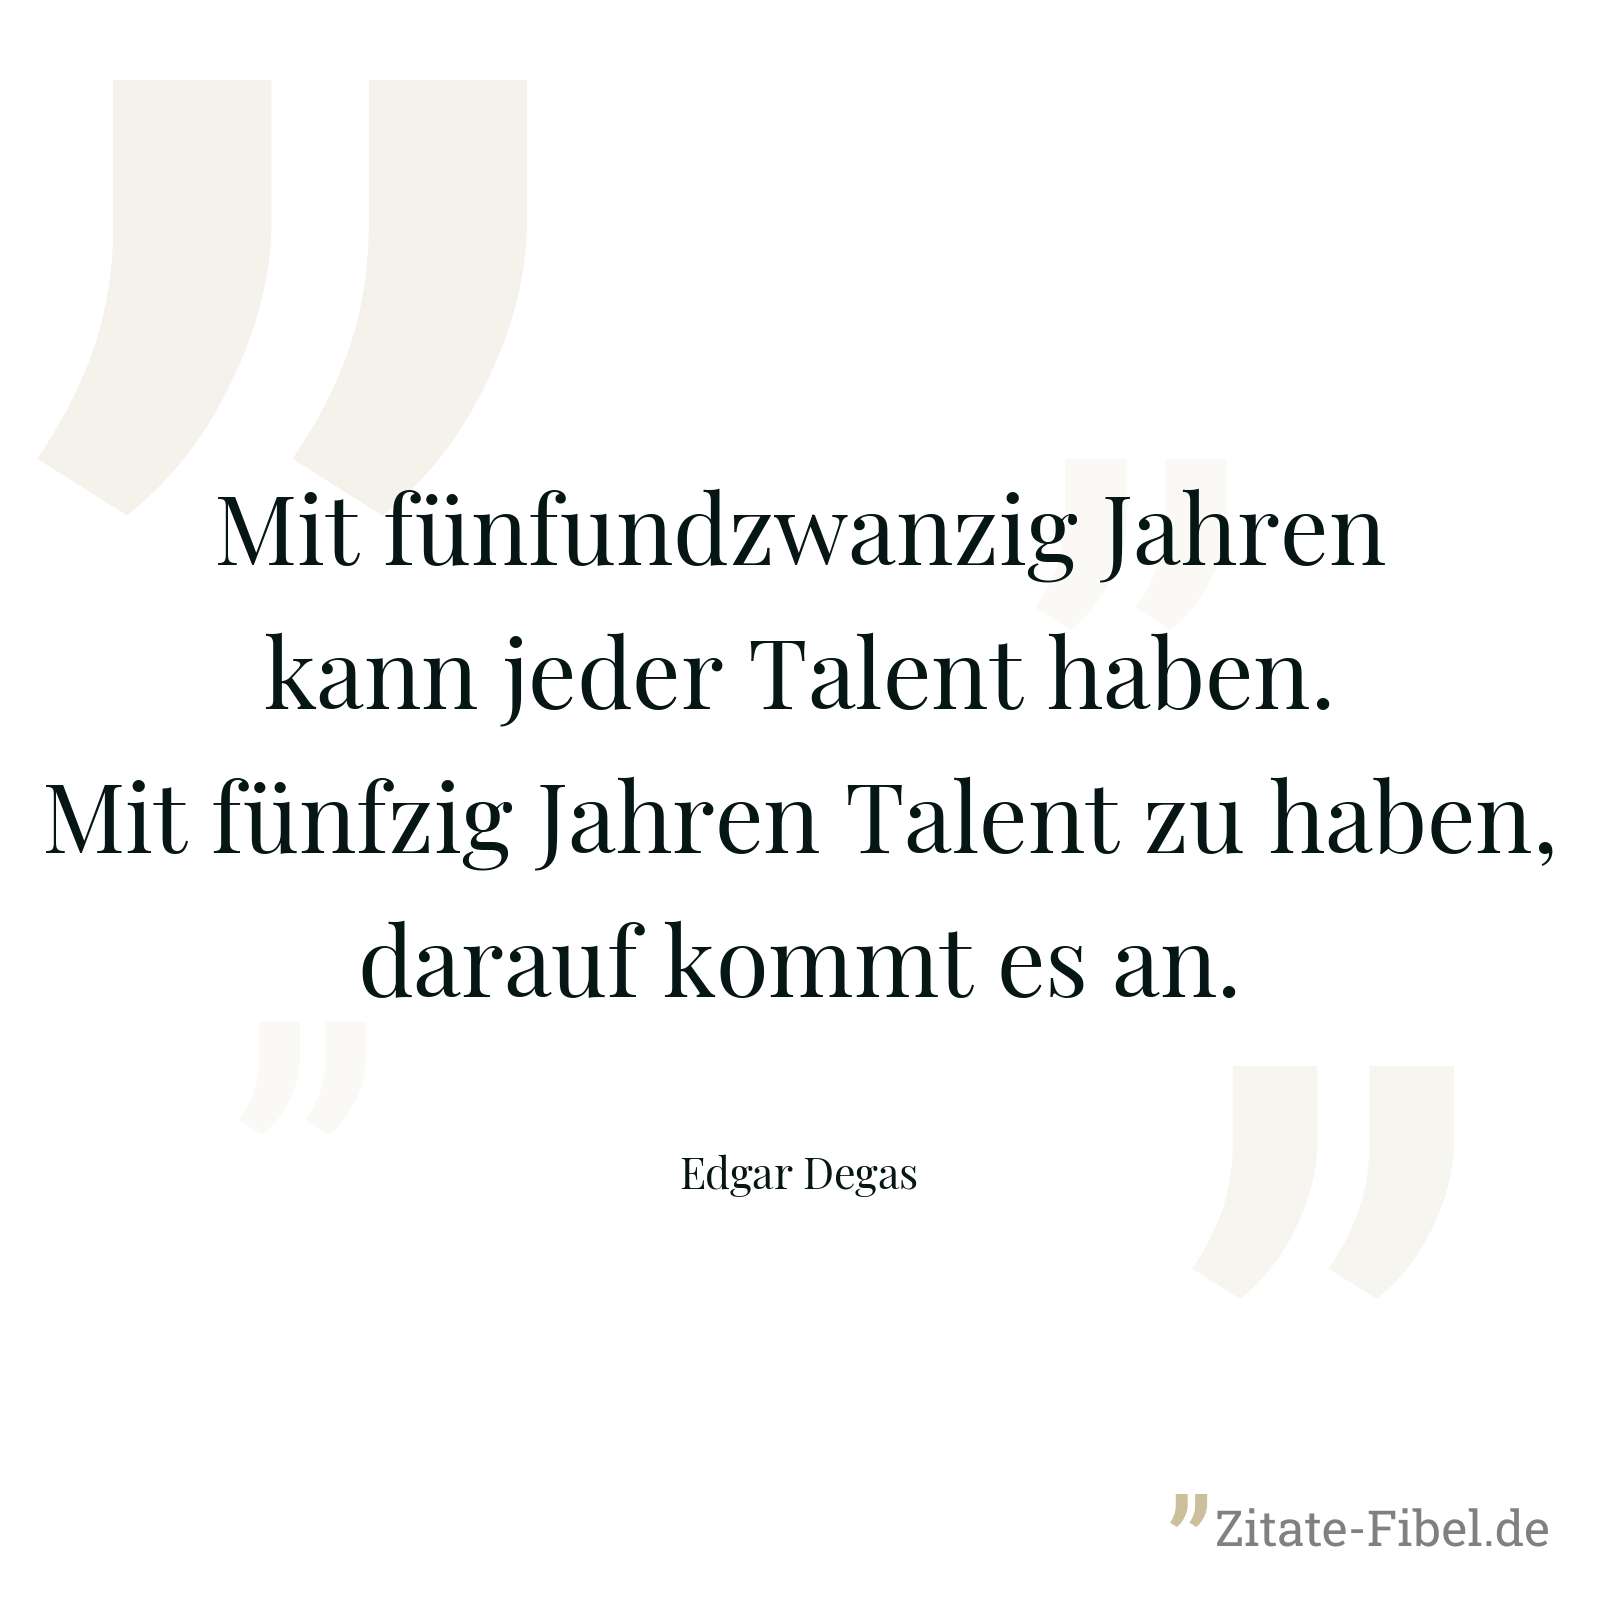 Mit fünfundzwanzig Jahren kann jeder Talent haben. Mit fünfzig Jahren Talent zu haben, darauf kommt es an. - Edgar Degas